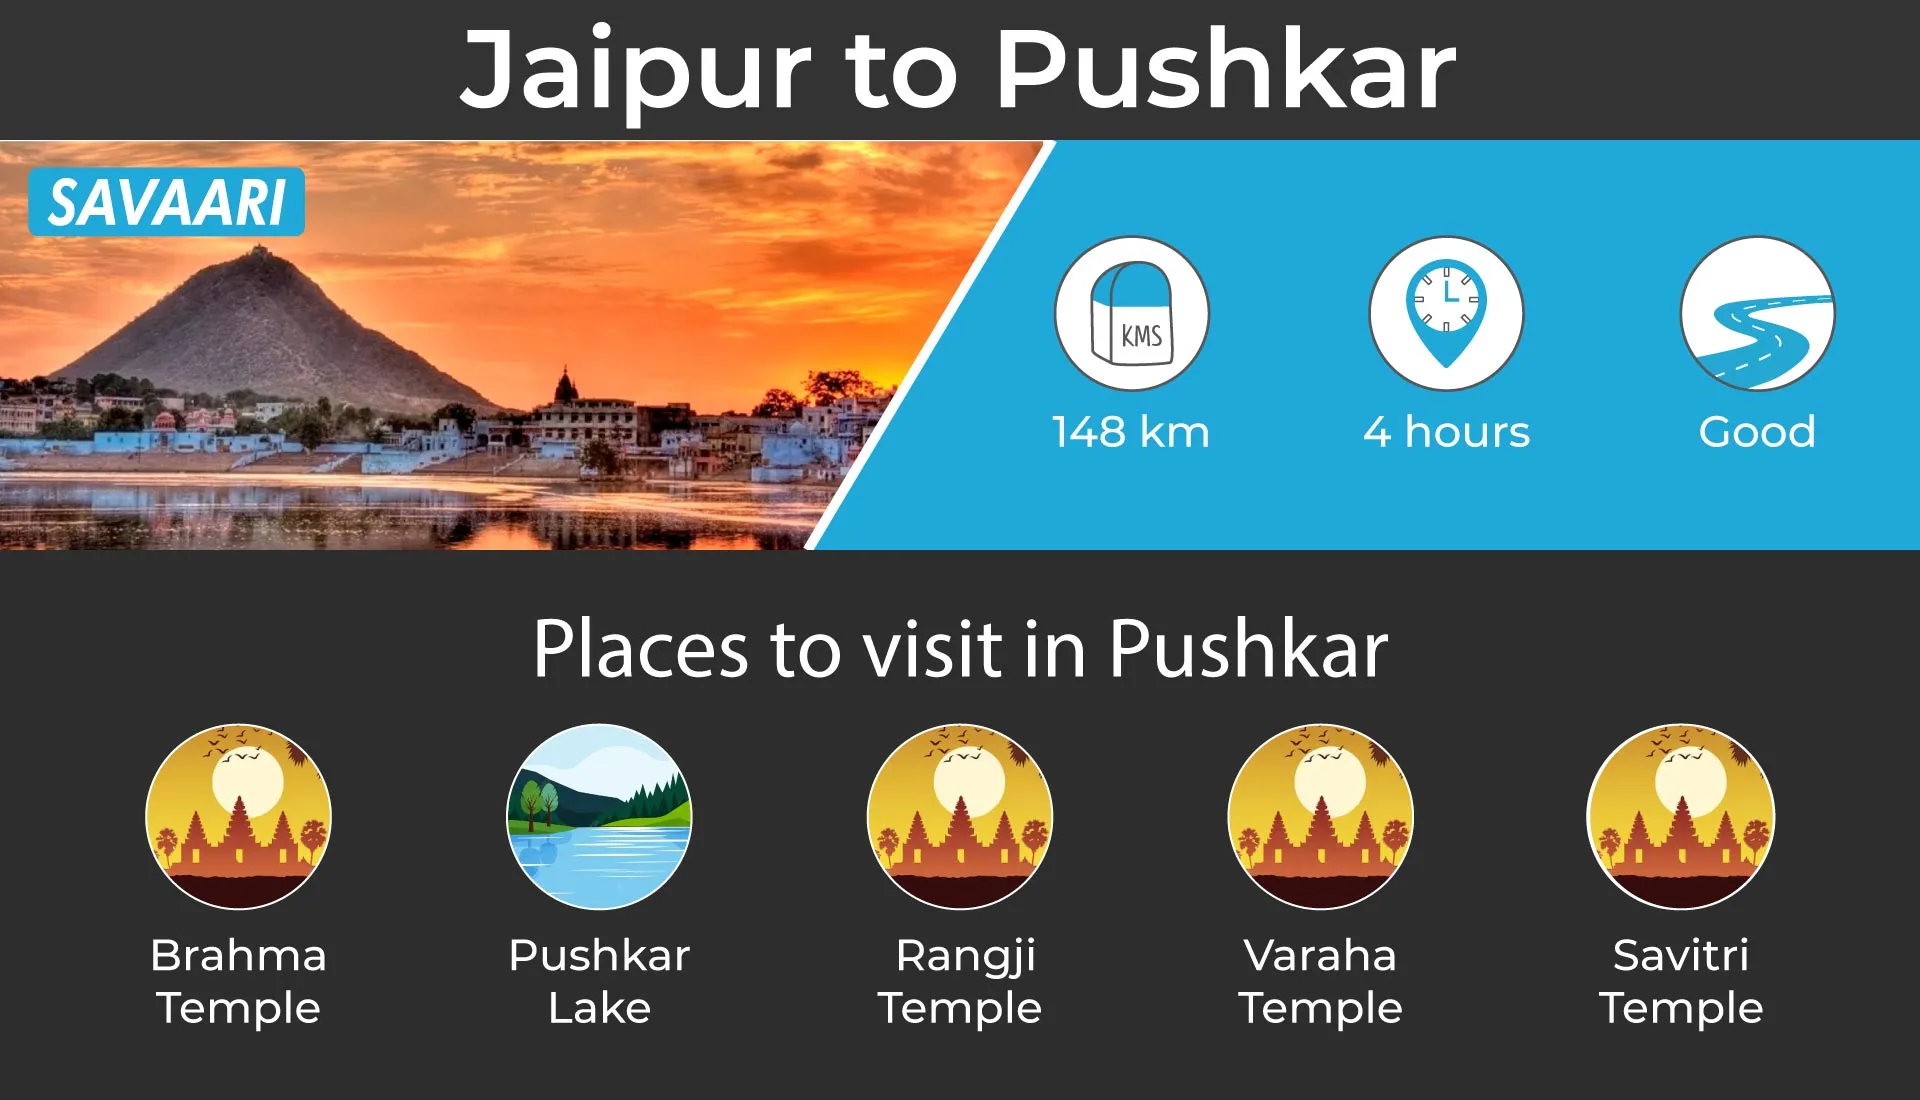 Jaipur to Pushkar by road